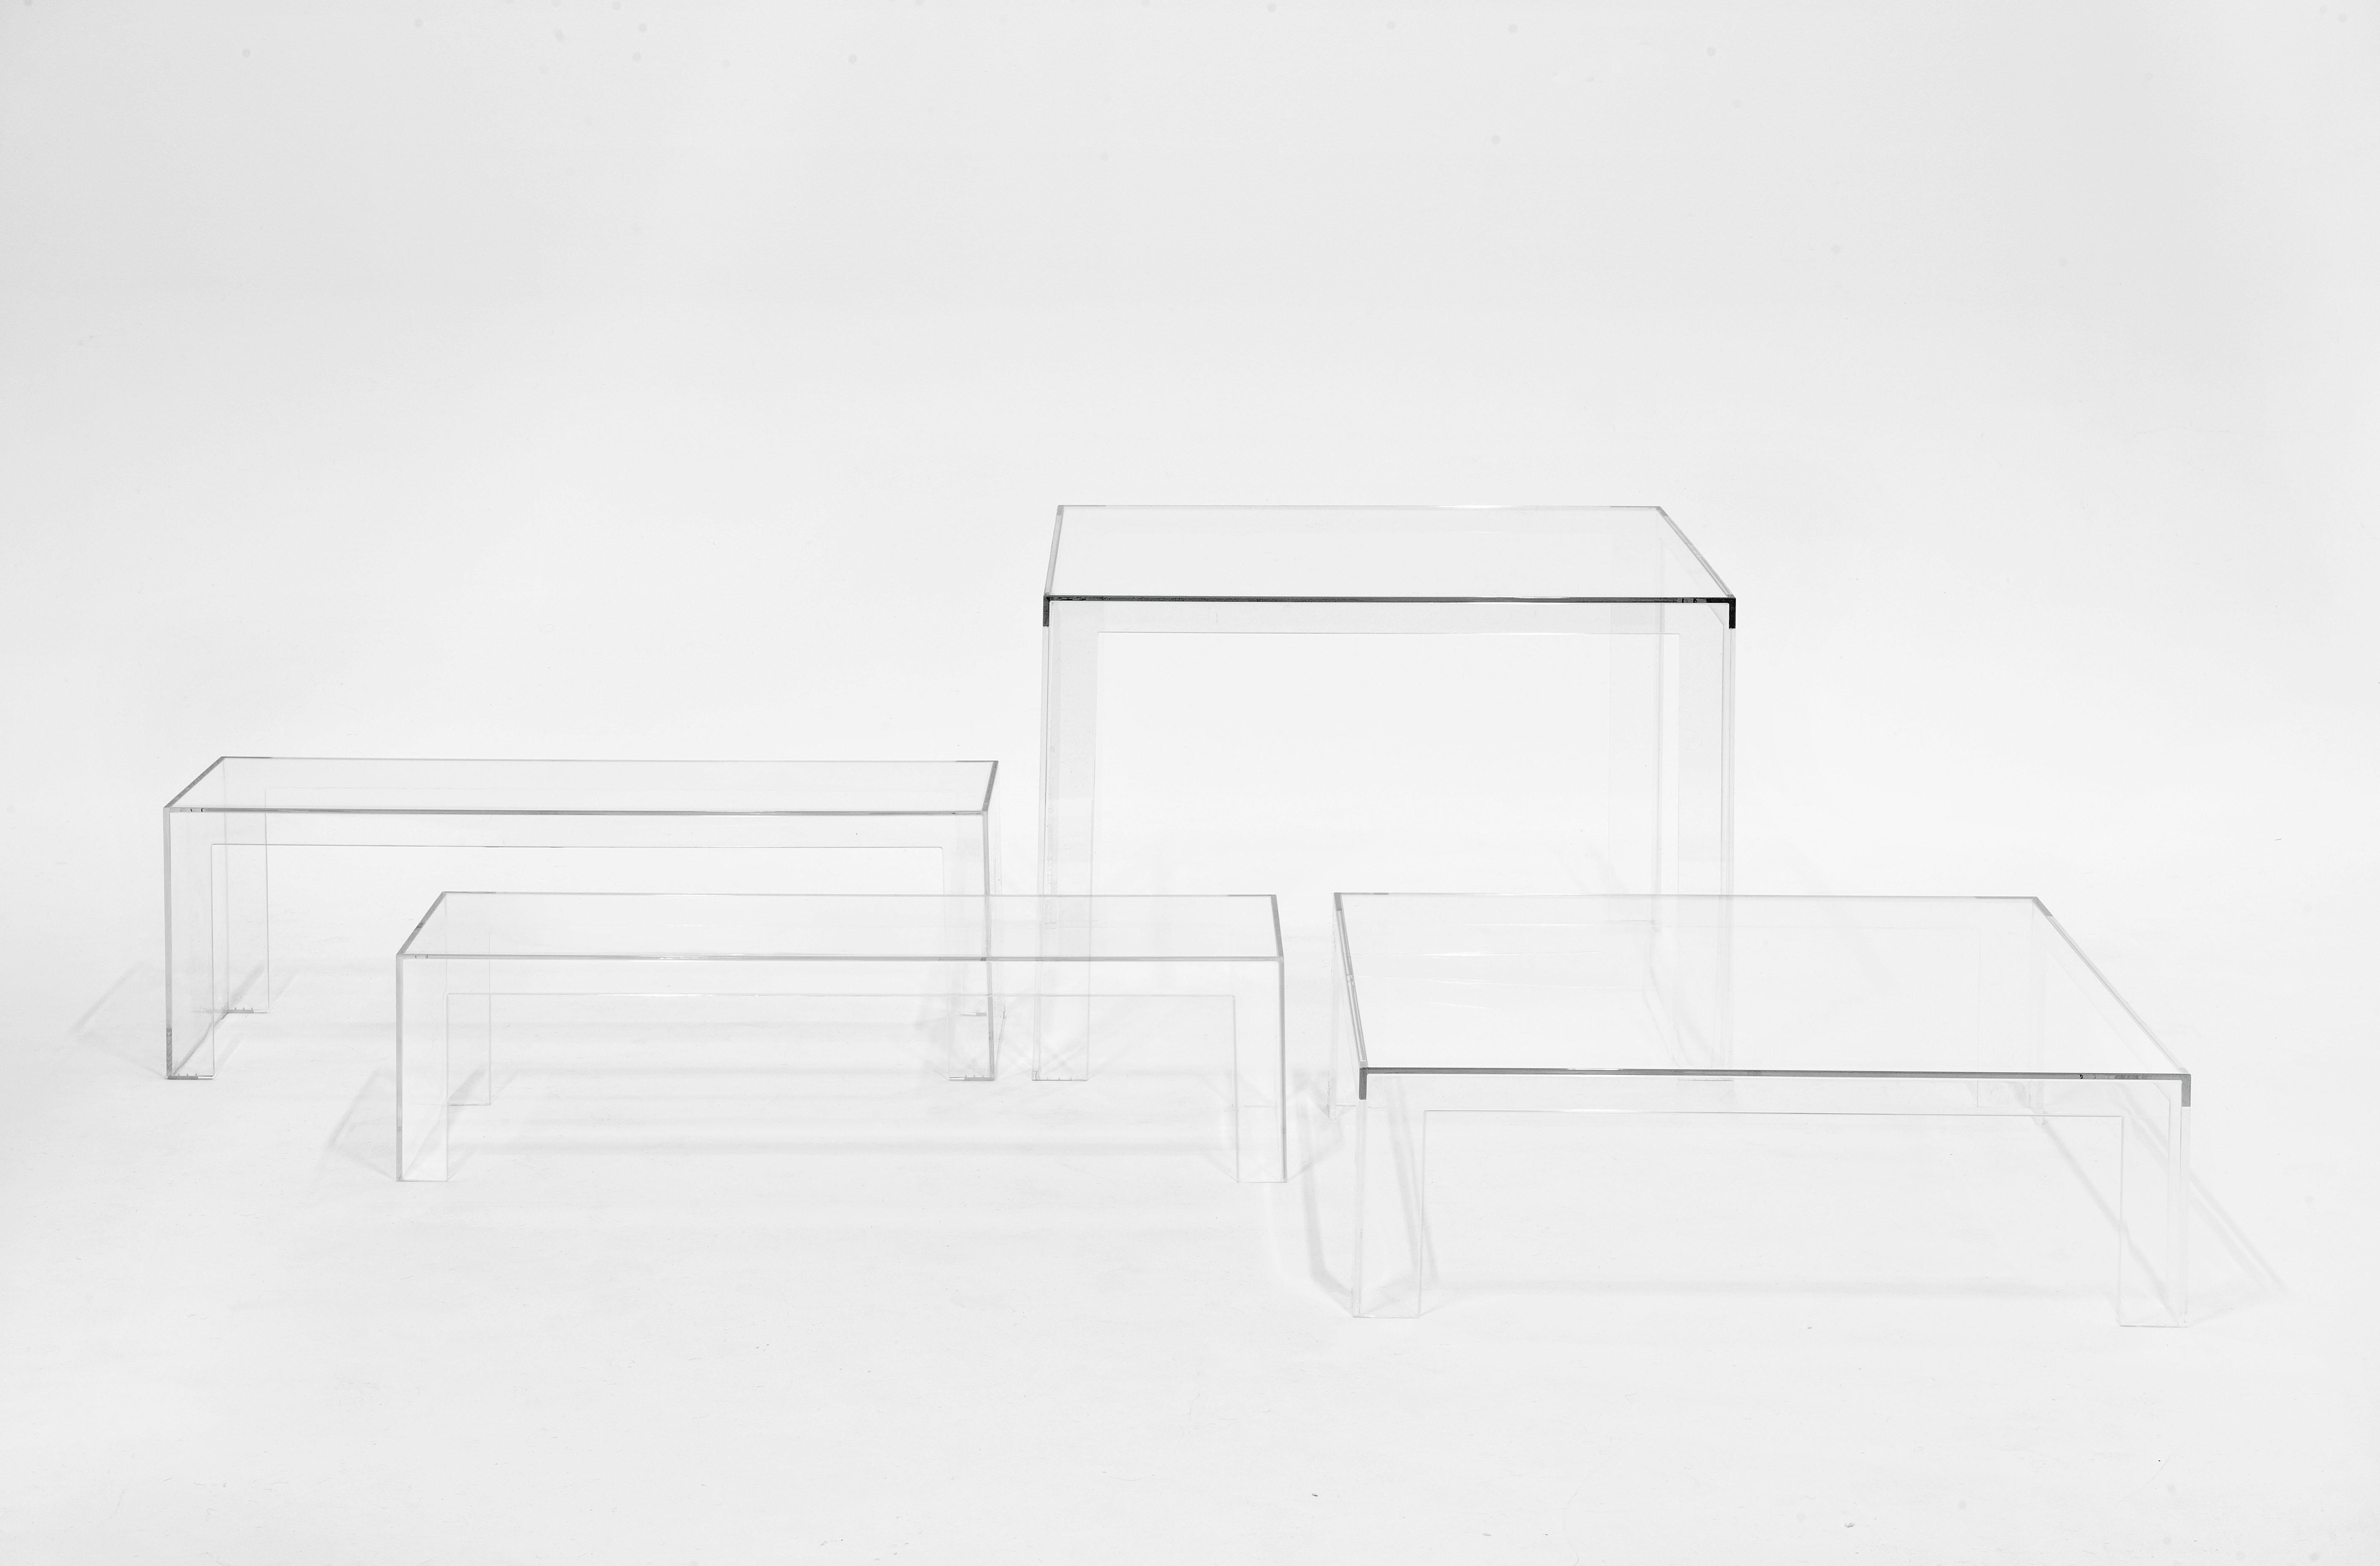 Une pièce au design épuré, linéaire et minimal, synthèse esthétique de la culture japonaise du designer. Invisible Side est un produit multifonctionnel léger et élégant qui peut être facilement transformé en table d'appoint ou en table console. Il